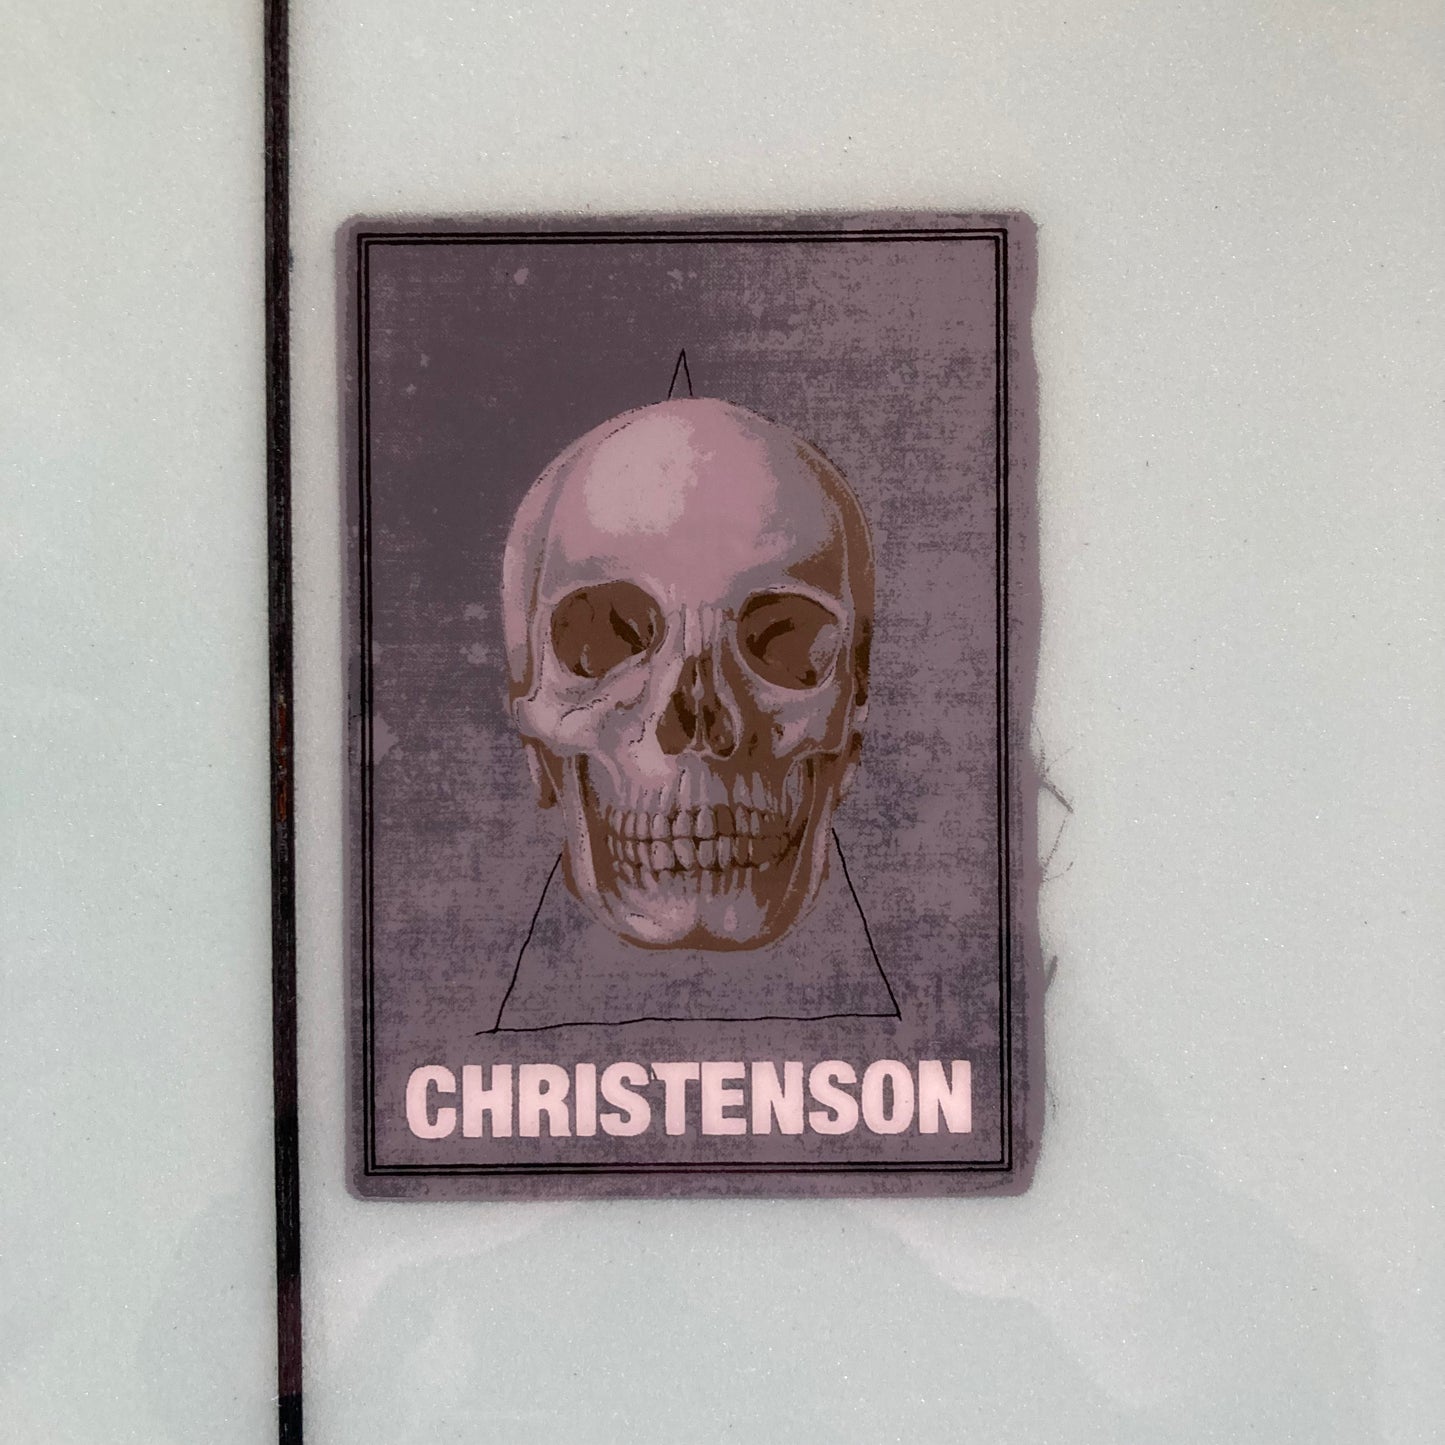 Christenson - 6'4" Wolverine